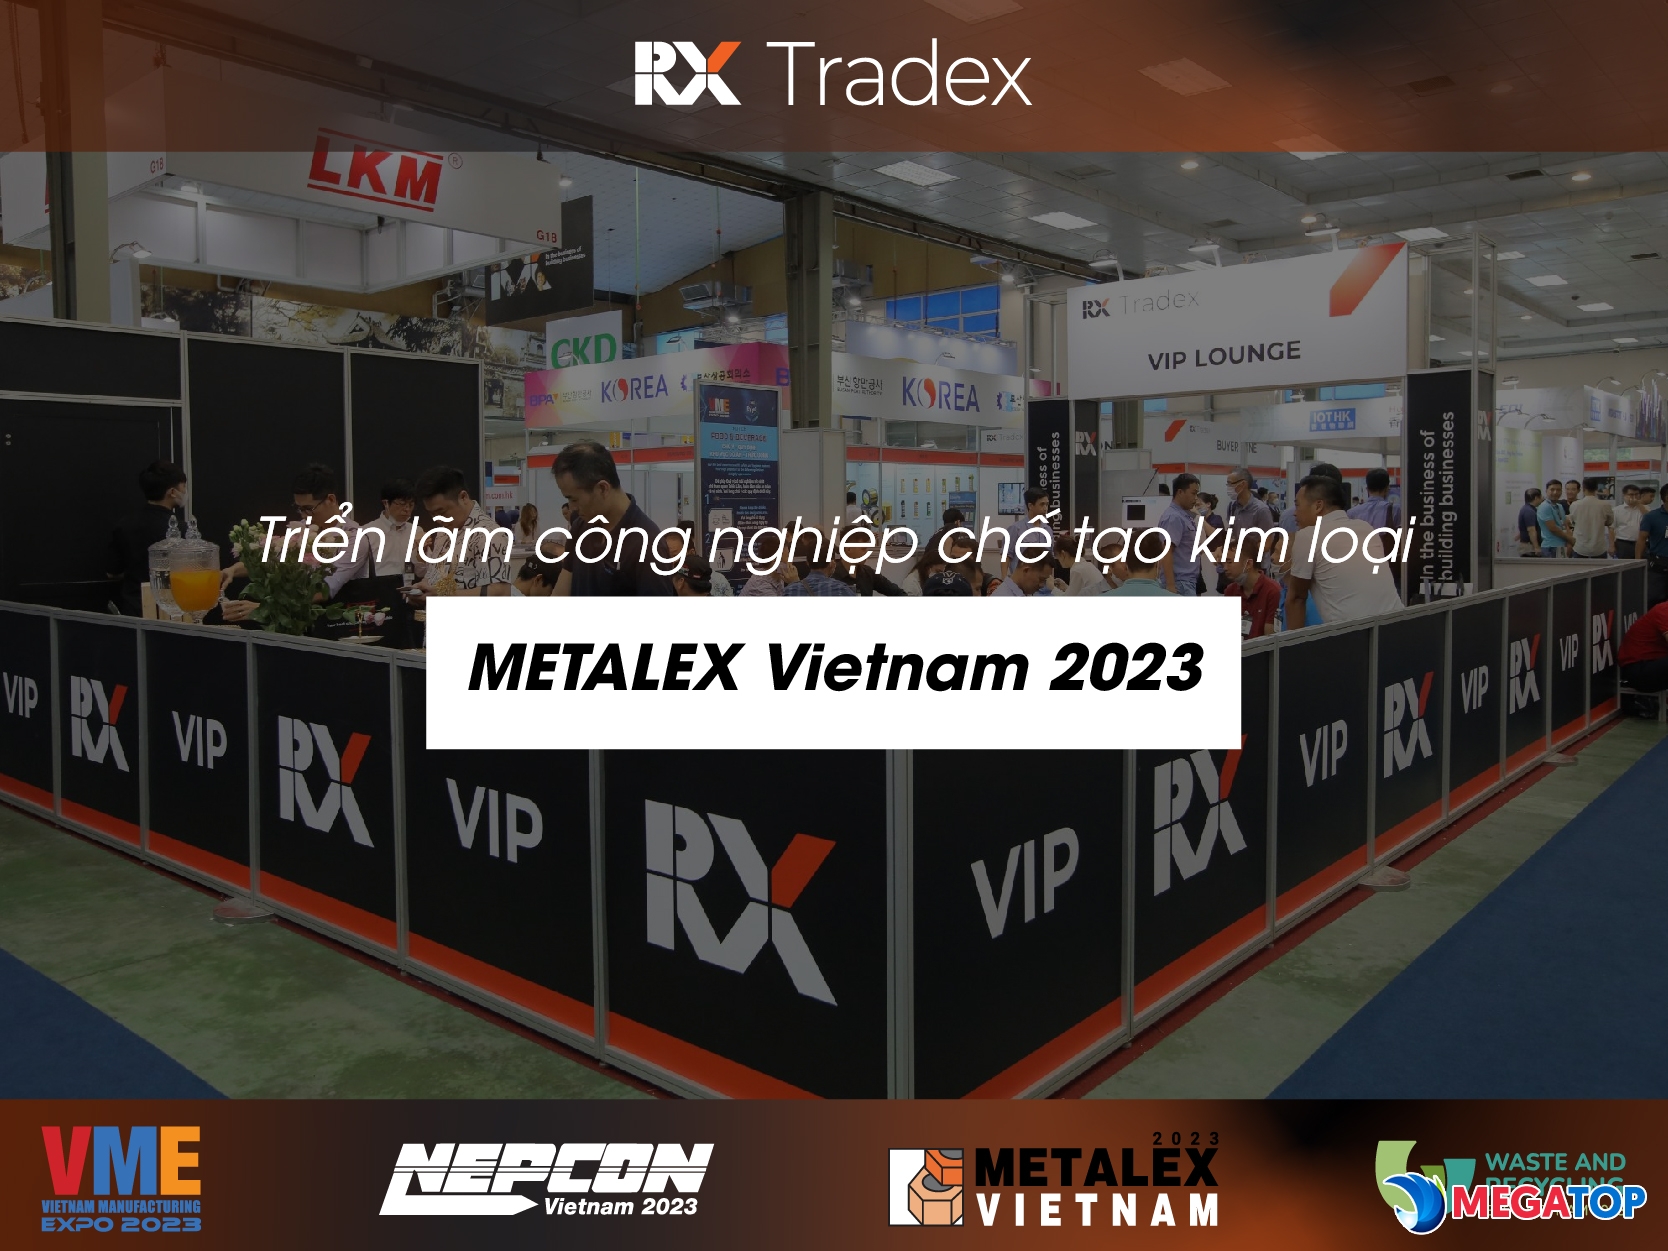 Triển lãm công nghiệp chế tạo kim loại METALEX Vietnam 2023